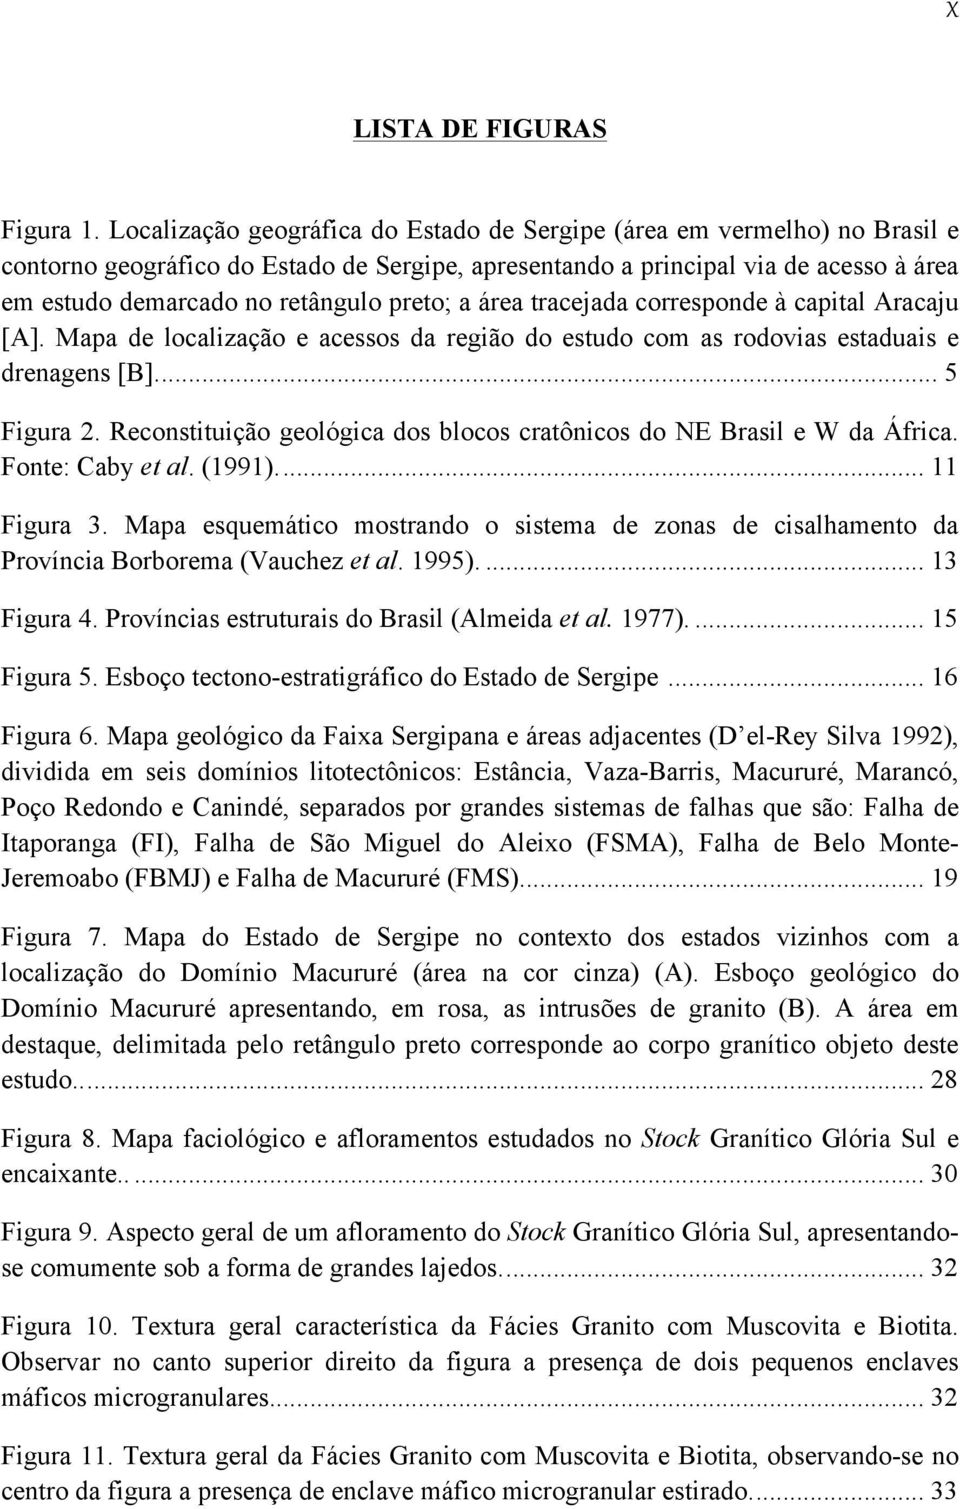 preto; a área tracejada corresponde à capital Aracaju [A]. Mapa de localização e acessos da região do estudo com as rodovias estaduais e drenagens [B].... 5 Figura 2.